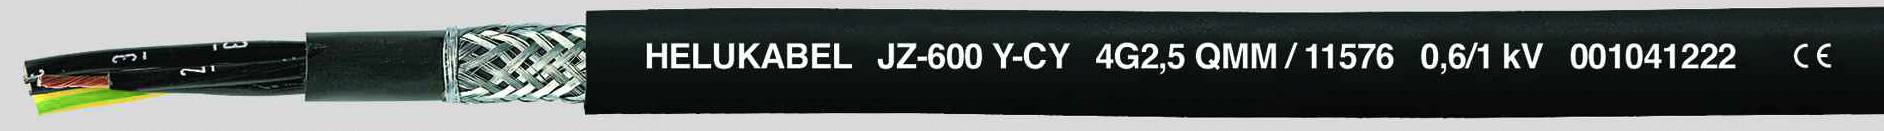 HELUKABEL JZ-600-Y-CY Steuerleitung 12 G 0.75 mm² Schwarz 11498-500 500 m